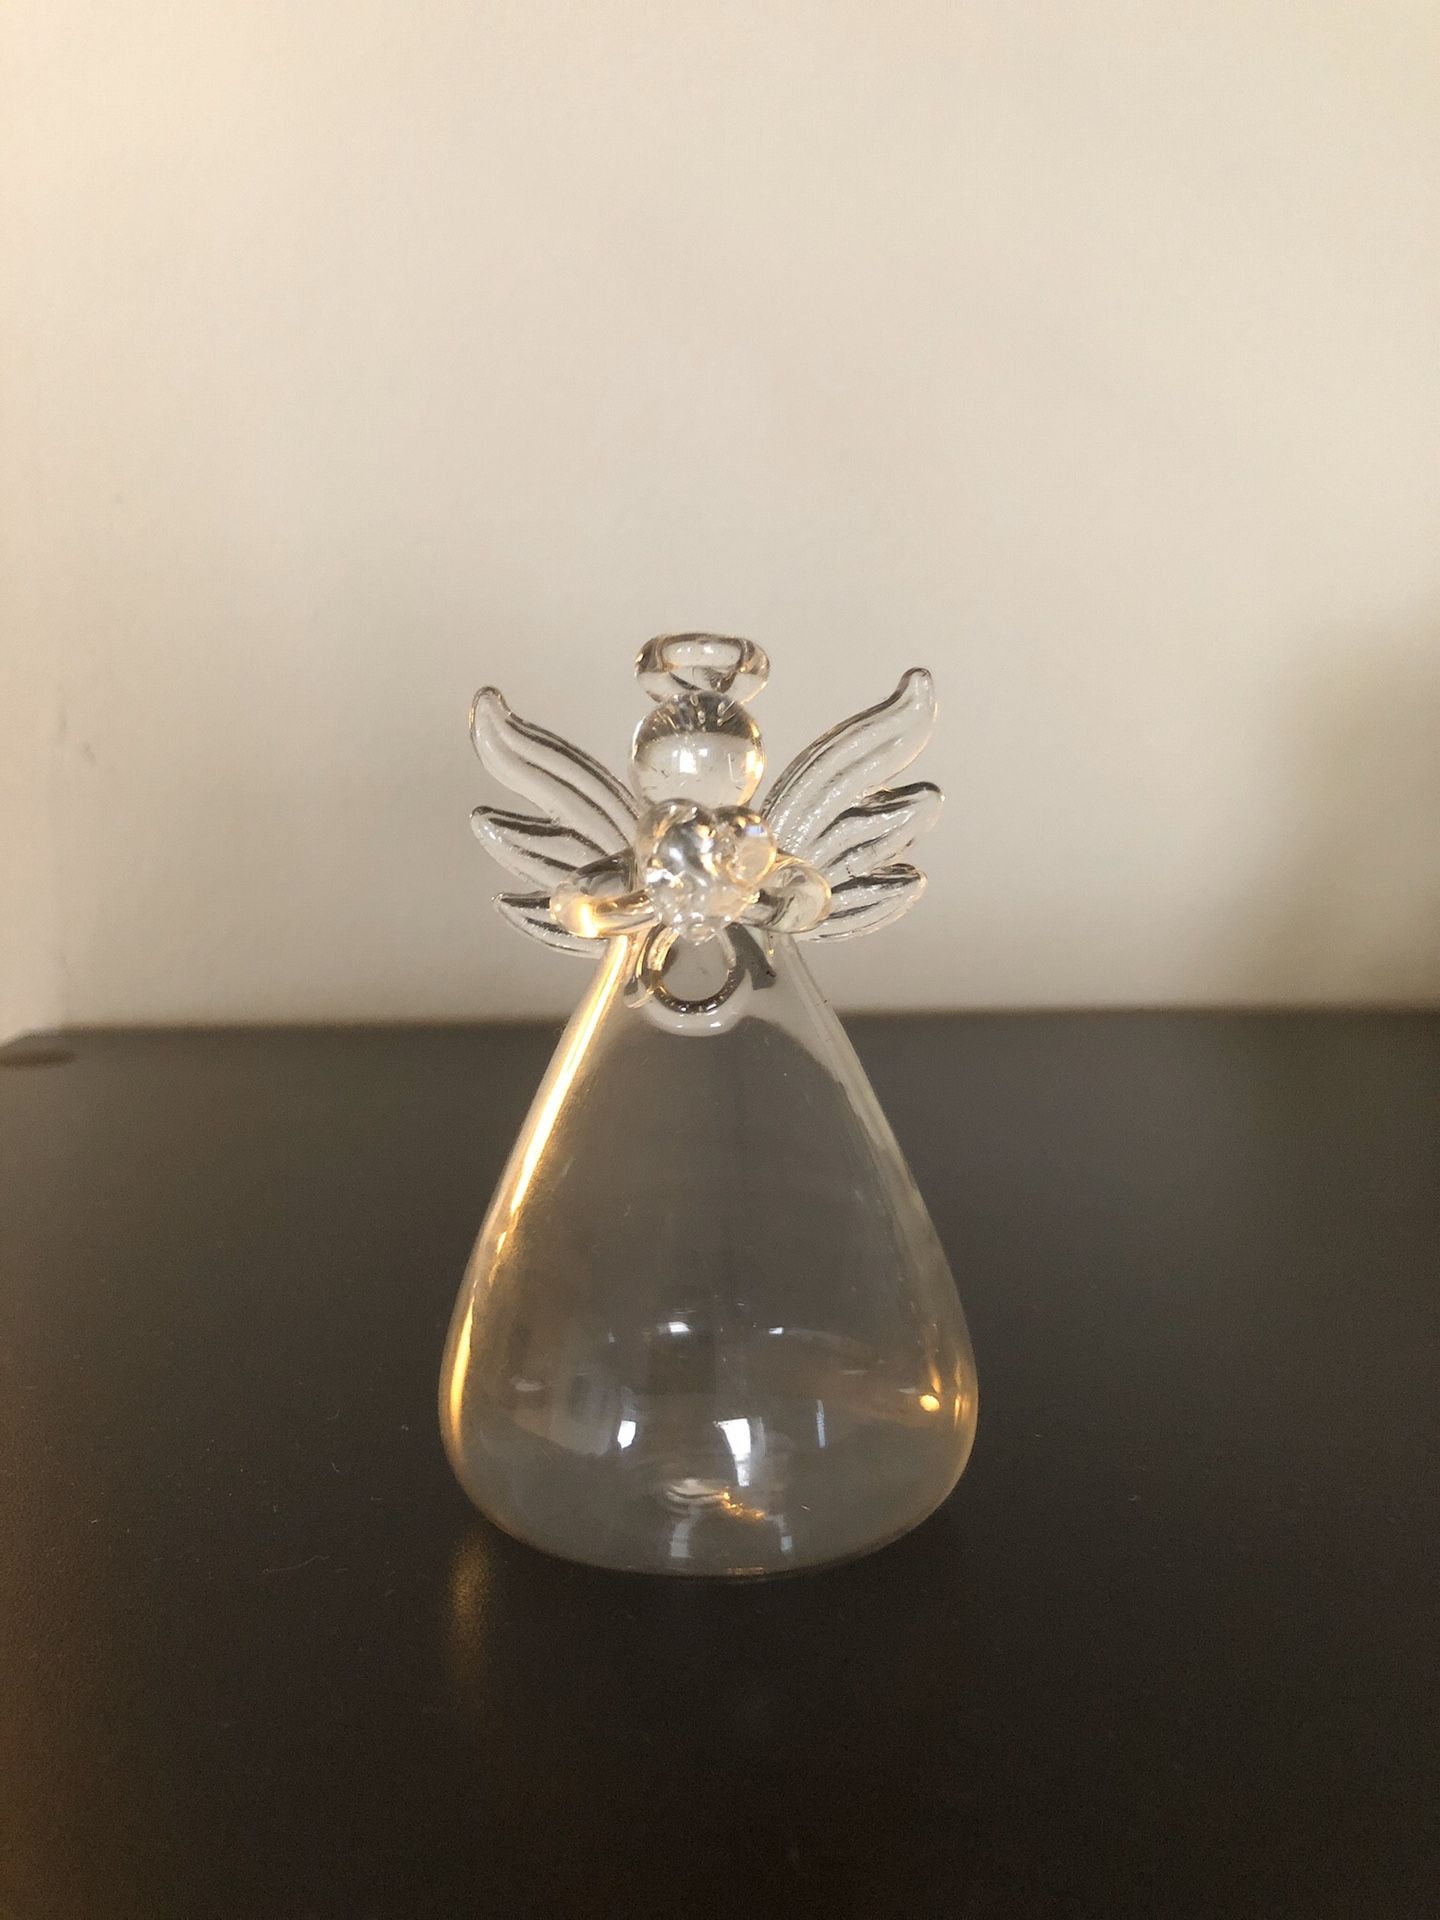 Flower angel vases